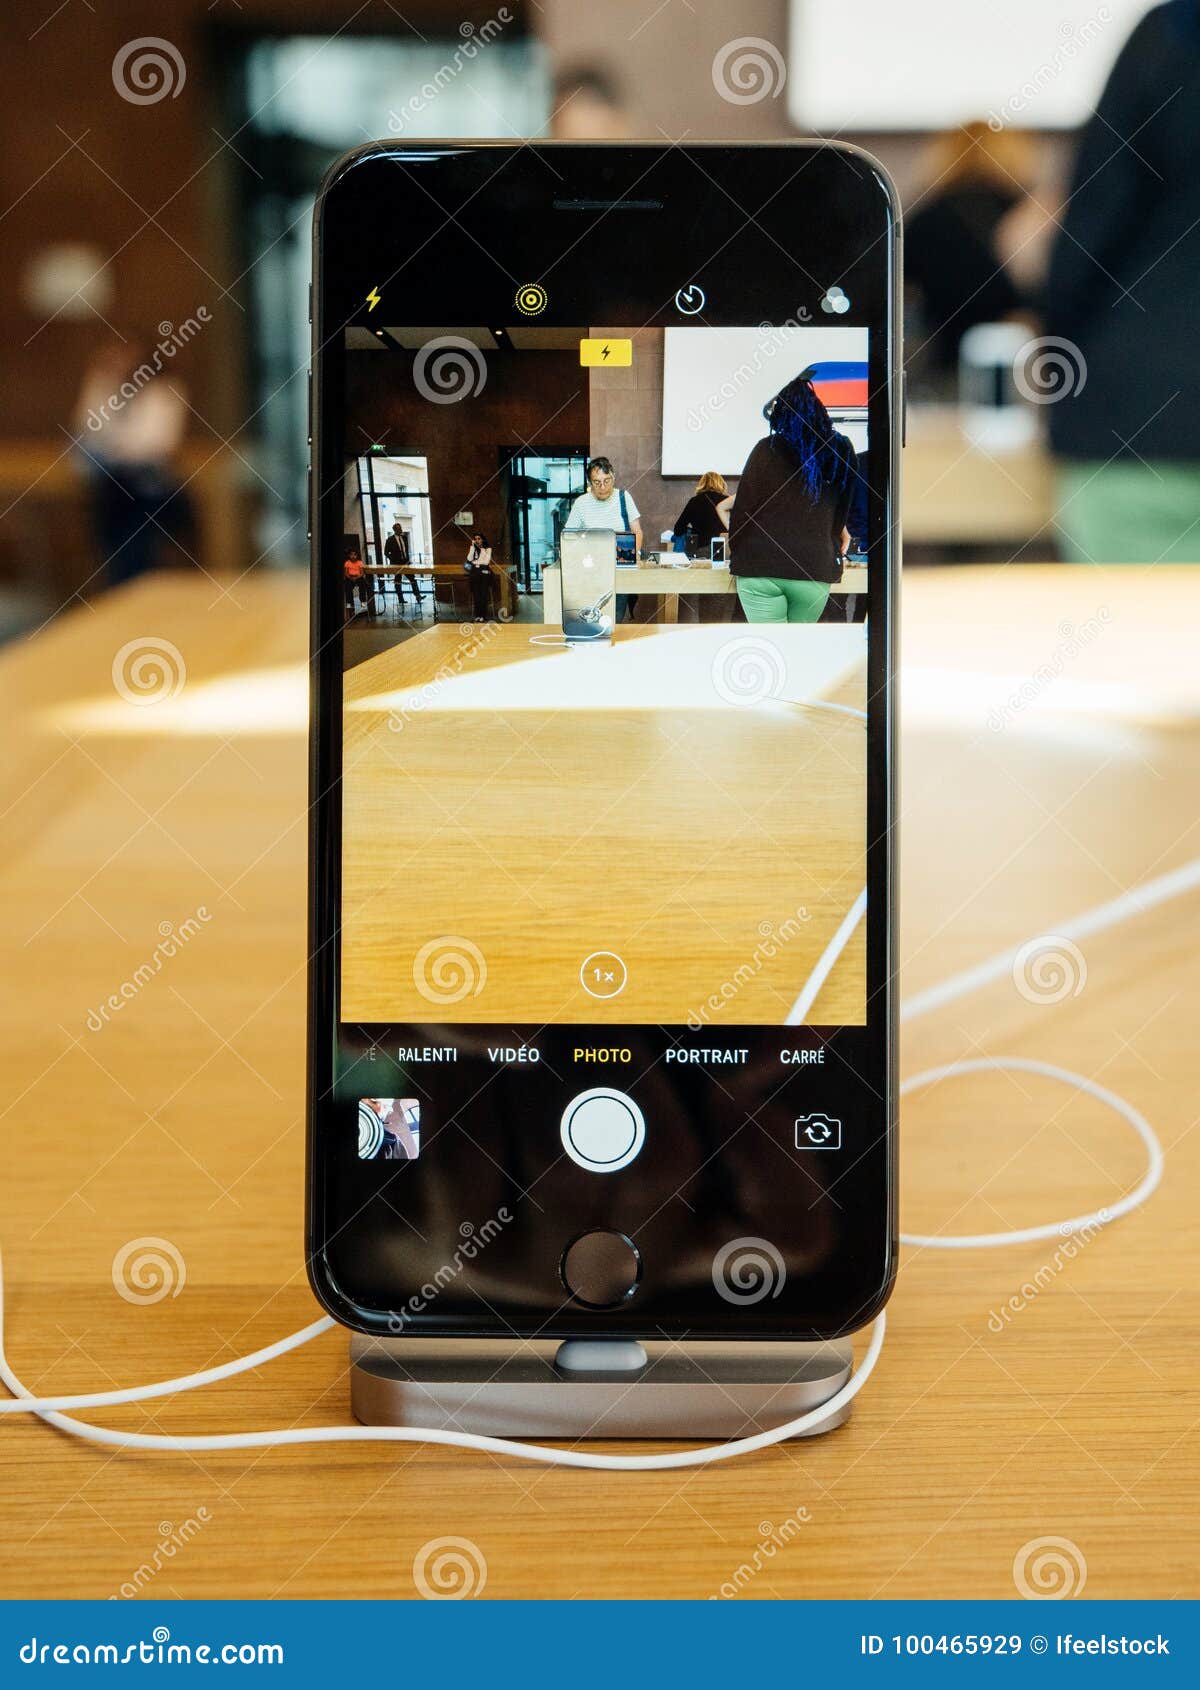 Een goede vriend weten Eigenlijk Interior Camera App New IPhone 8 and IPhone 8 Plus in Apple Store Editorial  Stock Image - Image of screen, illustrative: 100465929